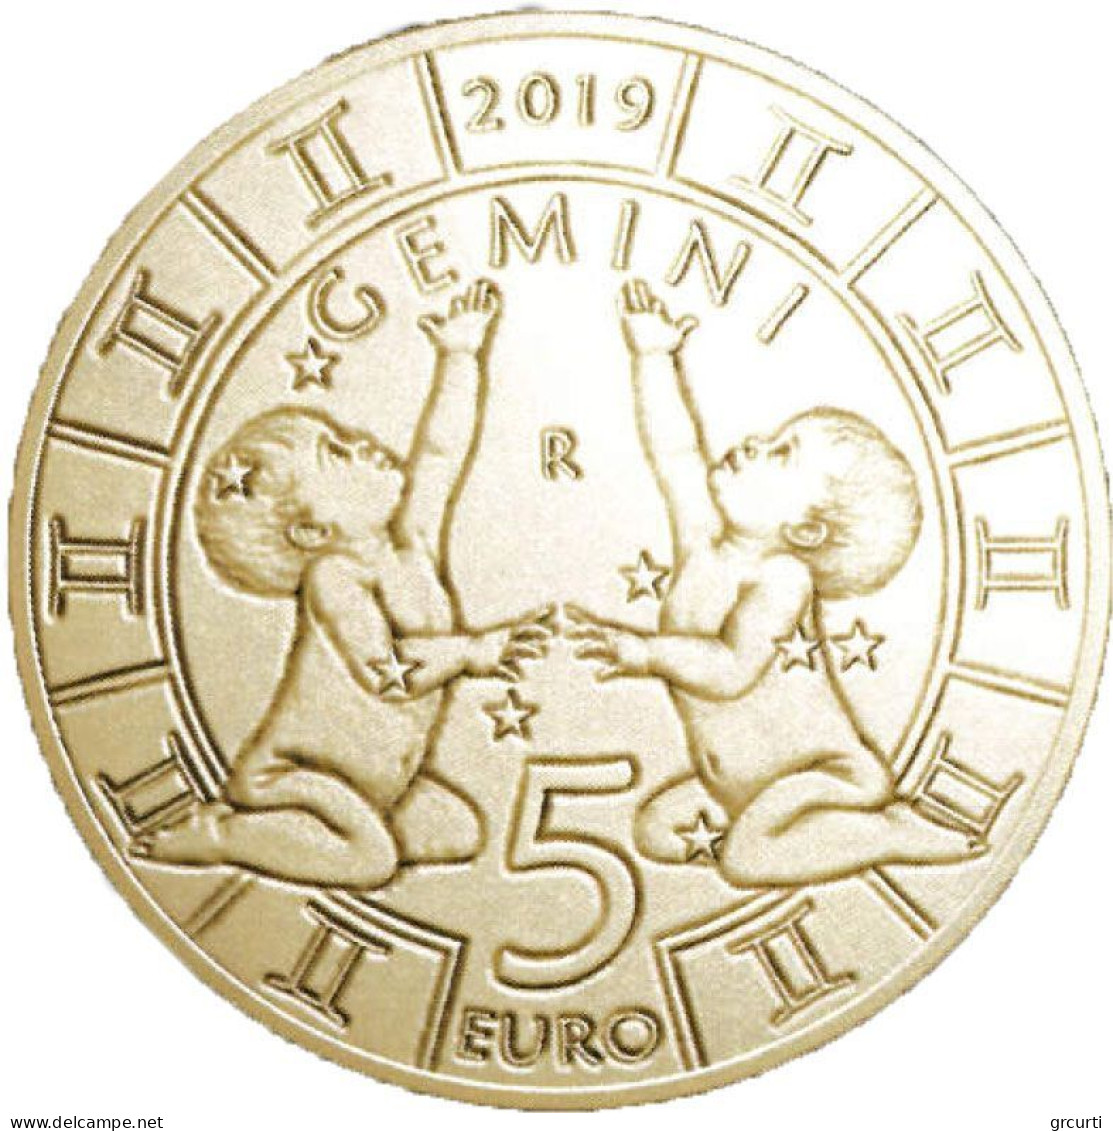 San Marino - 5 Euro 2019÷2021 - Segni dello zodiaco - 12 monete